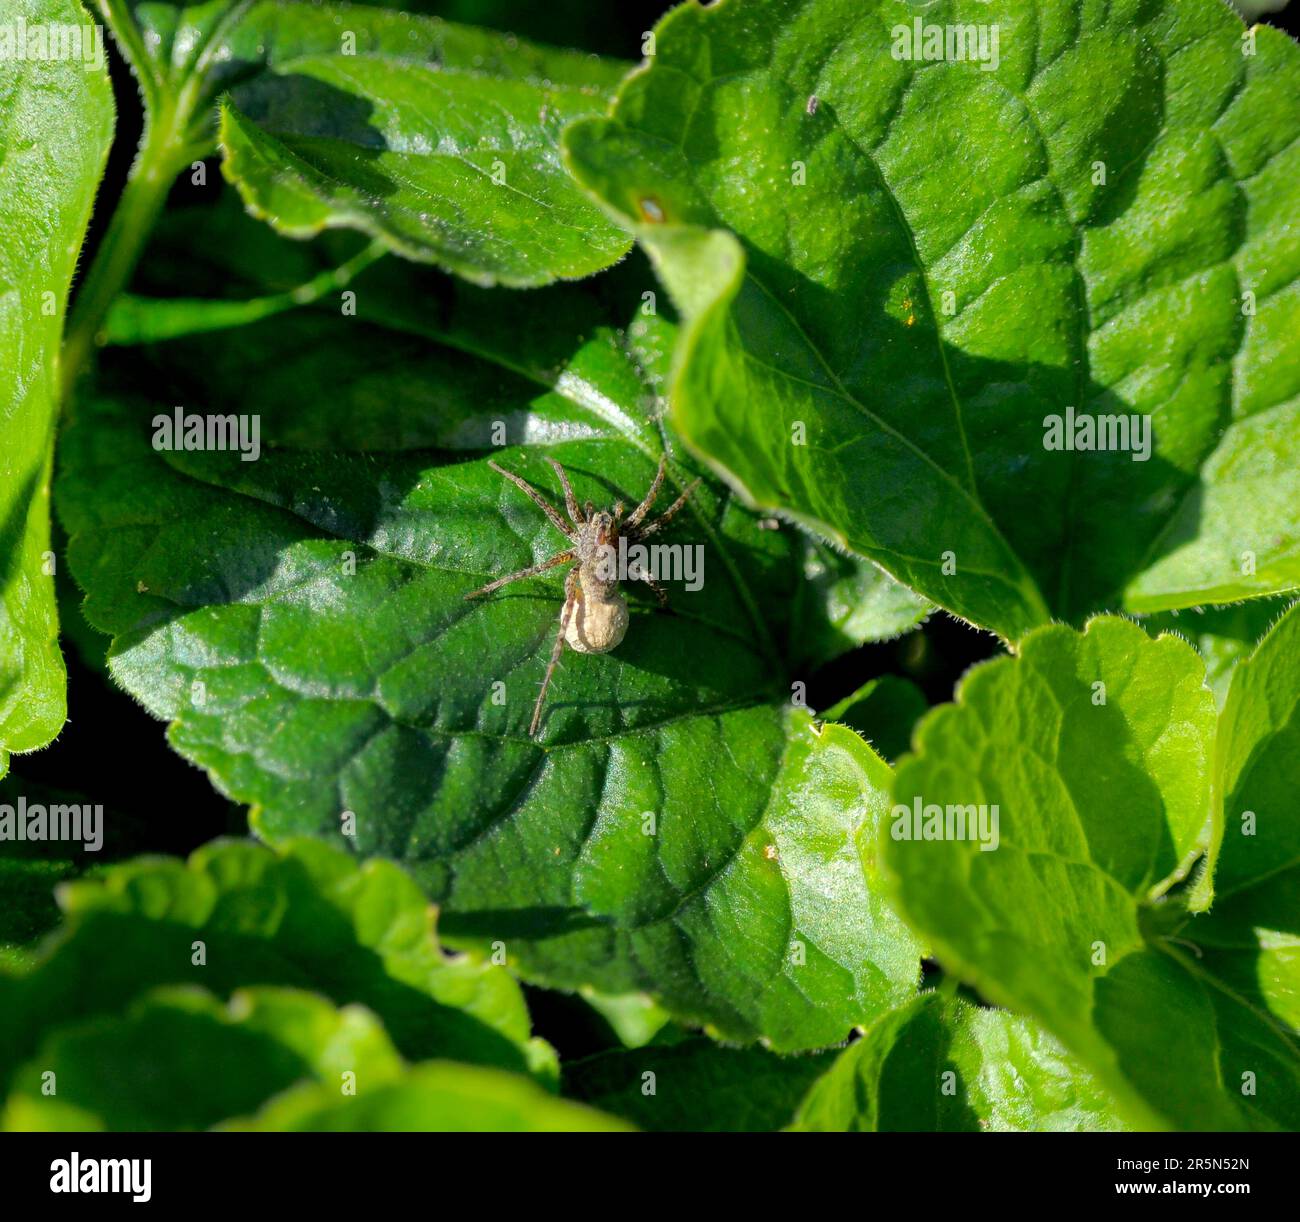 Spider on geranium leaf Stock Photo